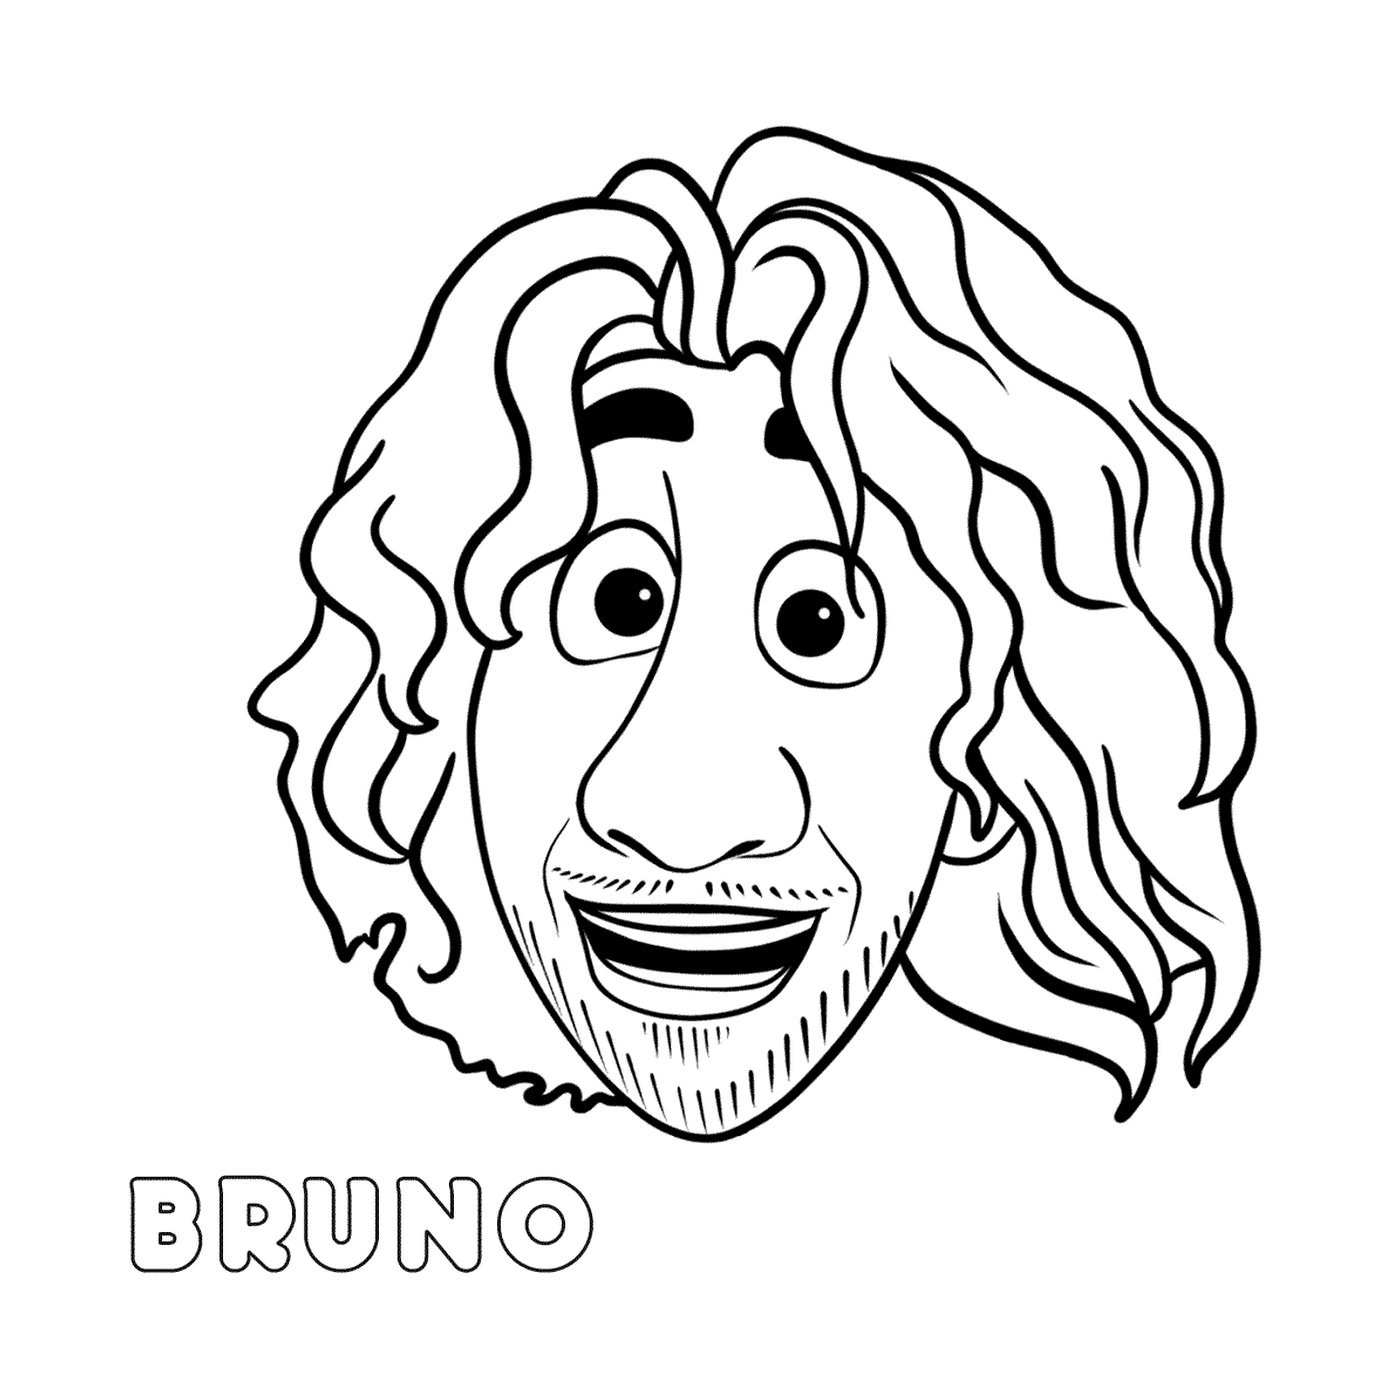  La cara de Bruno con el pelo largo 